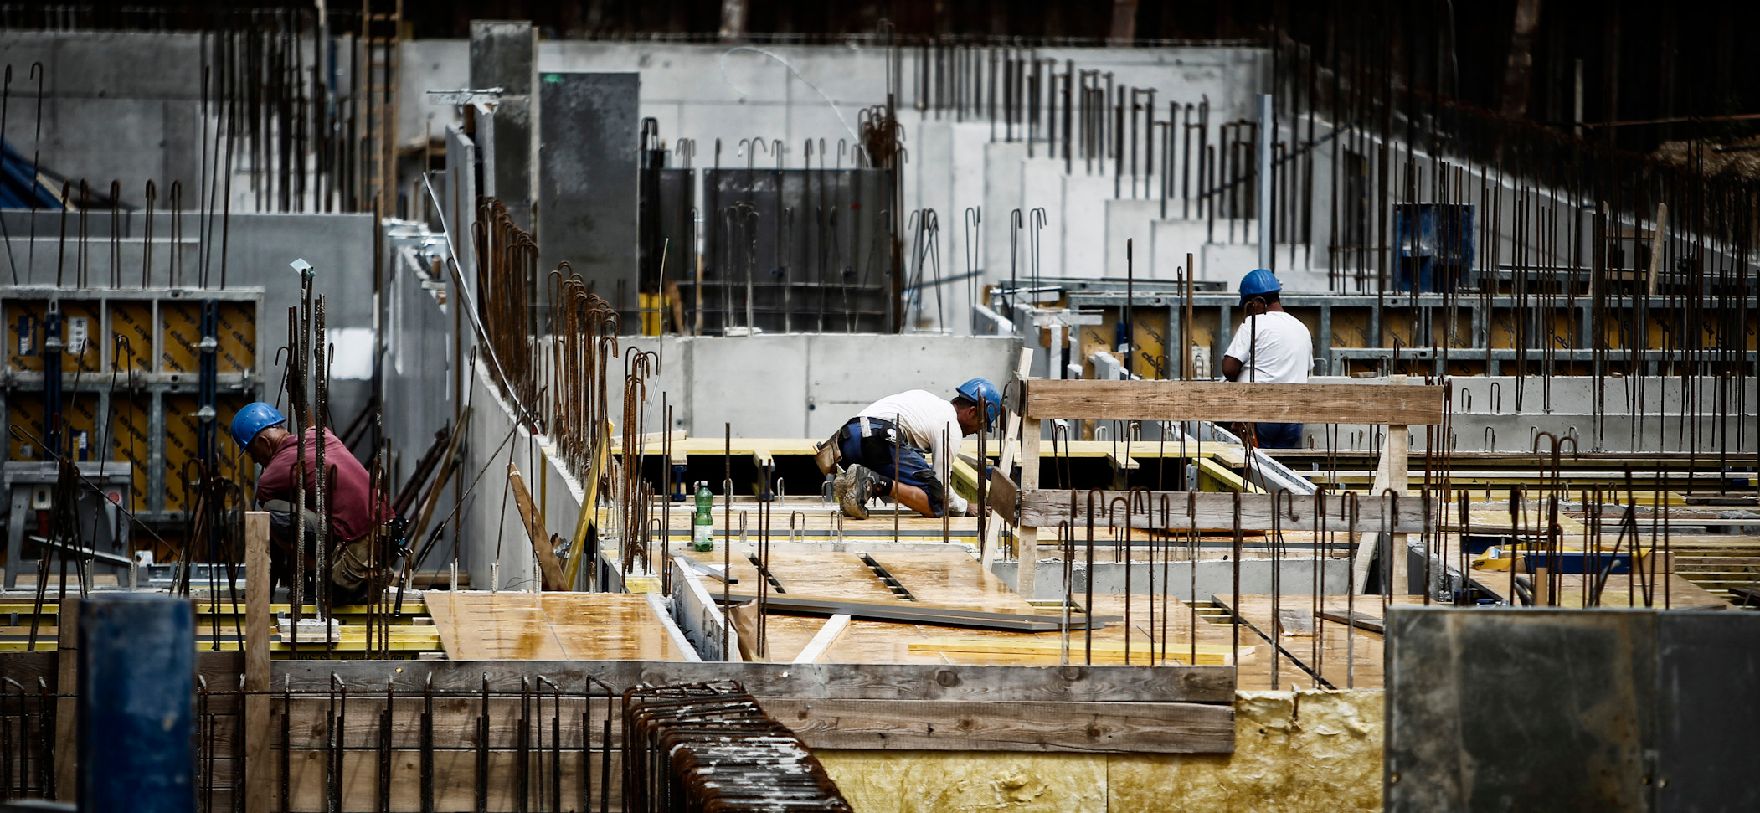 Arbeiter auf der Baustelle des ÖBB Hauptbahnhofes in Wien. Schlagworte: Arbeiter, Baustelle, Helme, Menschen, Wirtschaft